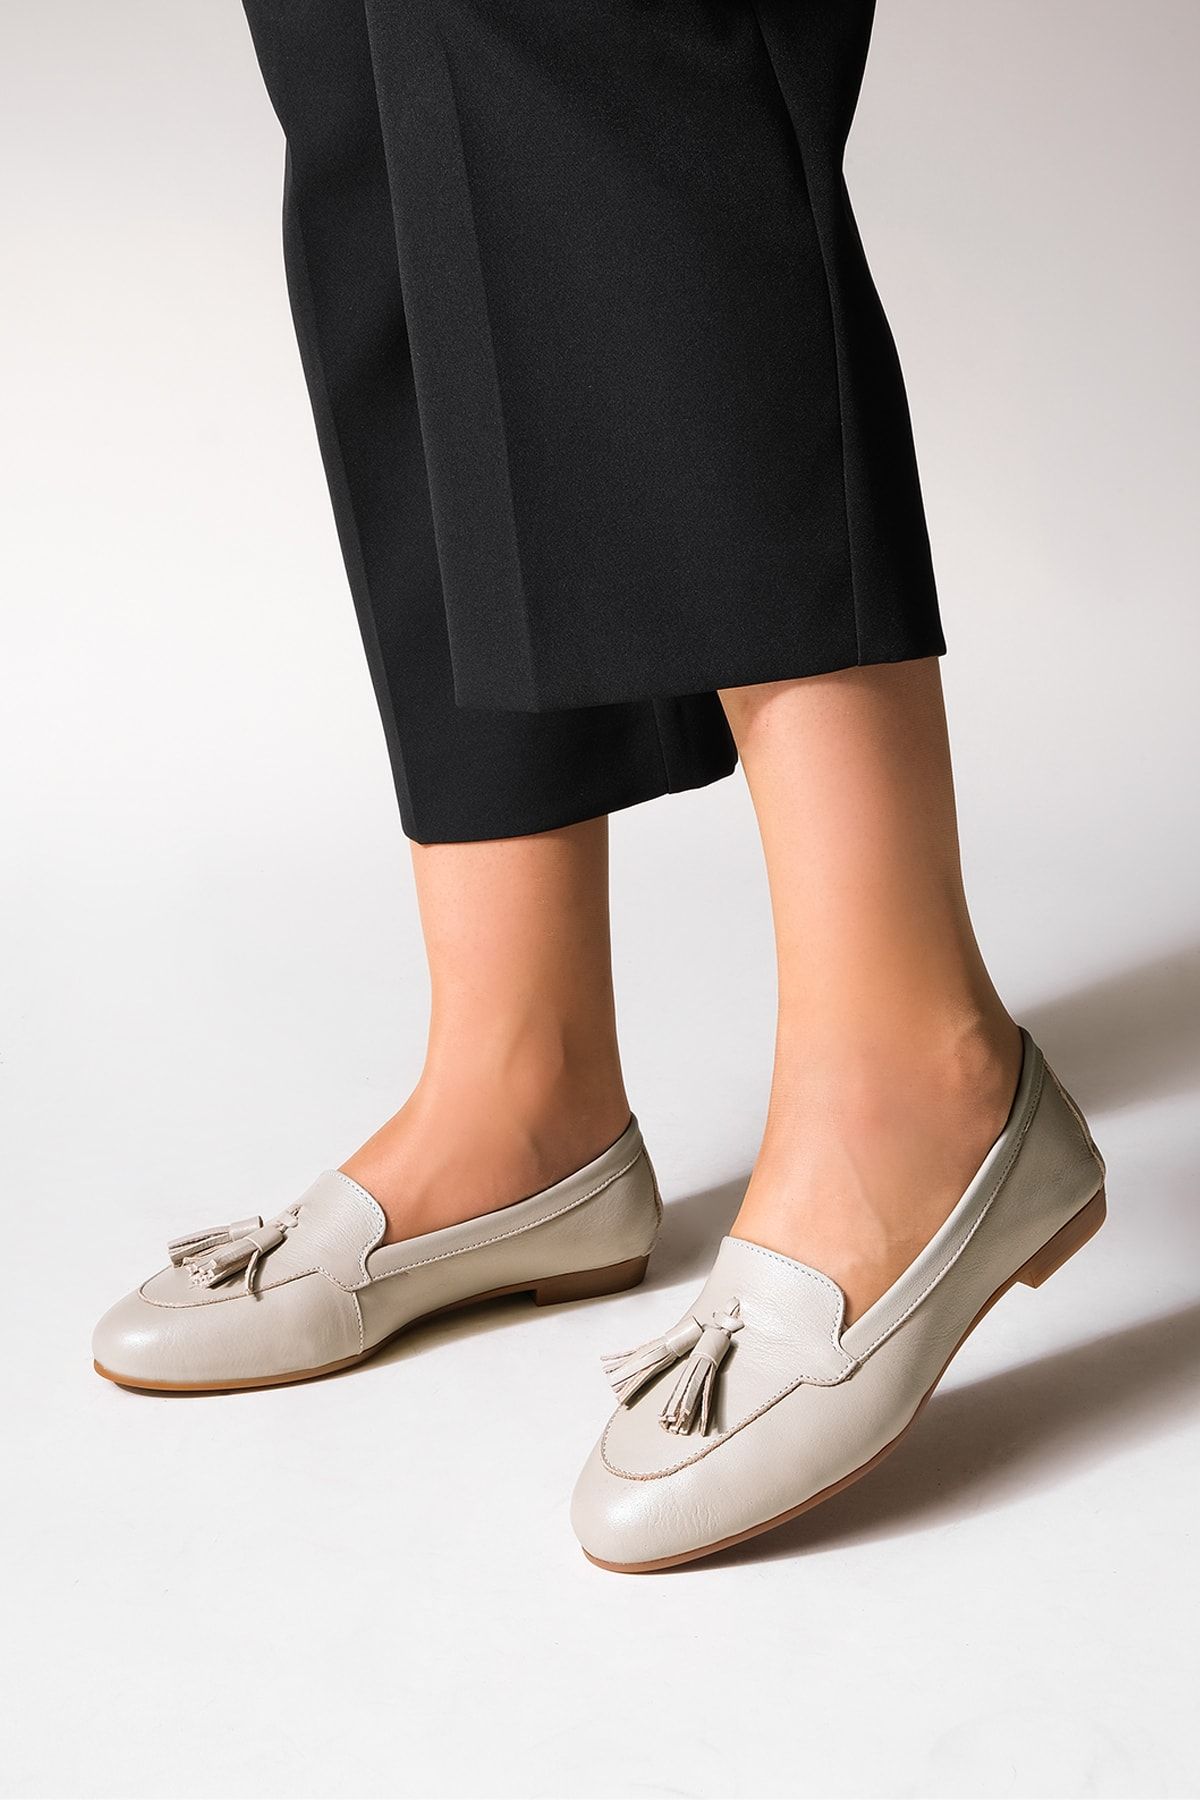 Marjin Kadın Hakiki Deri Loafer Comfort Ayakkabı Reyla vizon